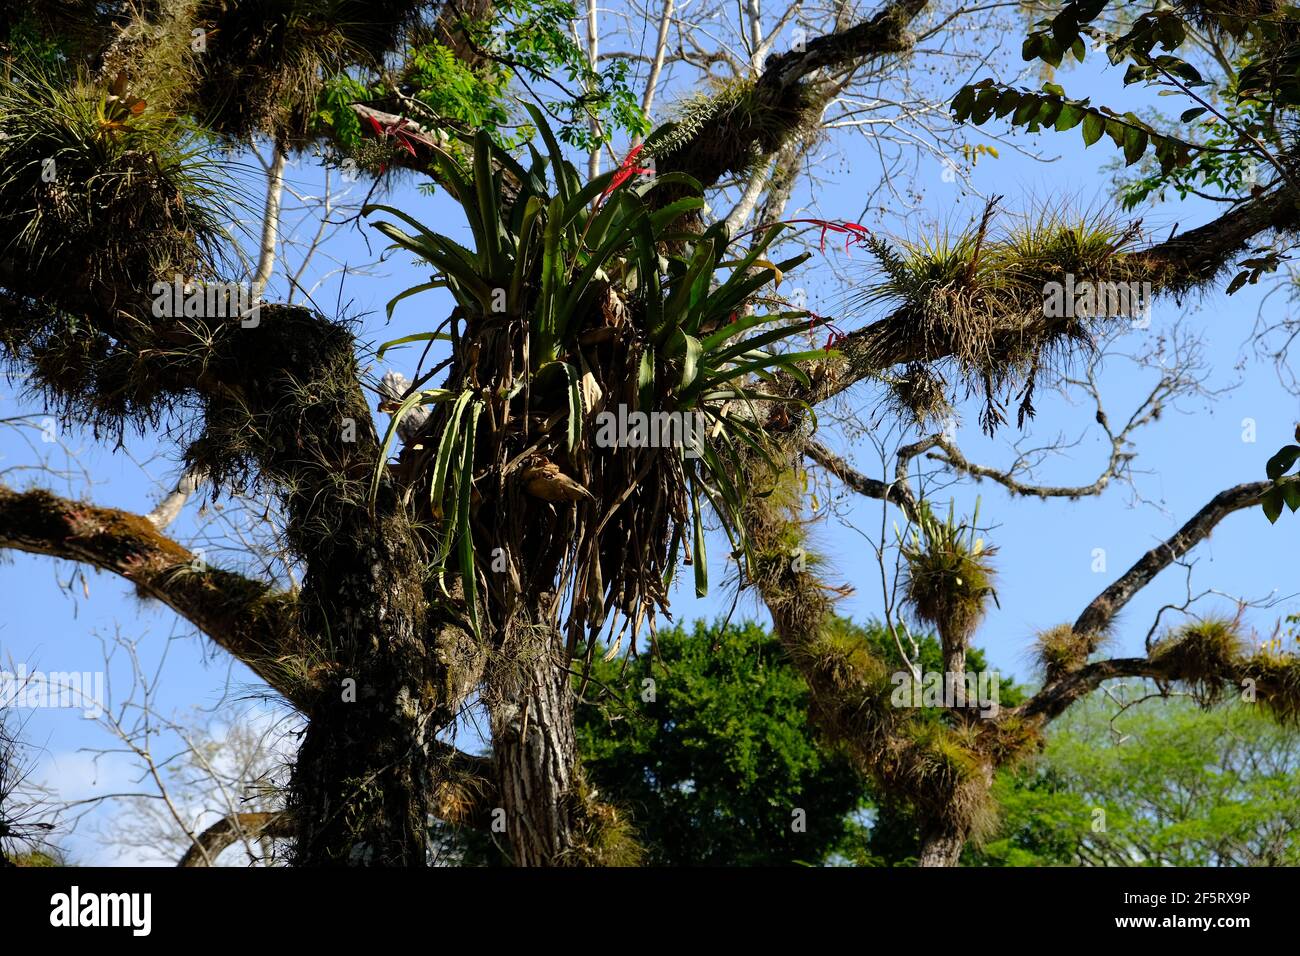 Honduras Copan  Ruinas - Arboreal orchids in Ruins of Copan Stock Photo